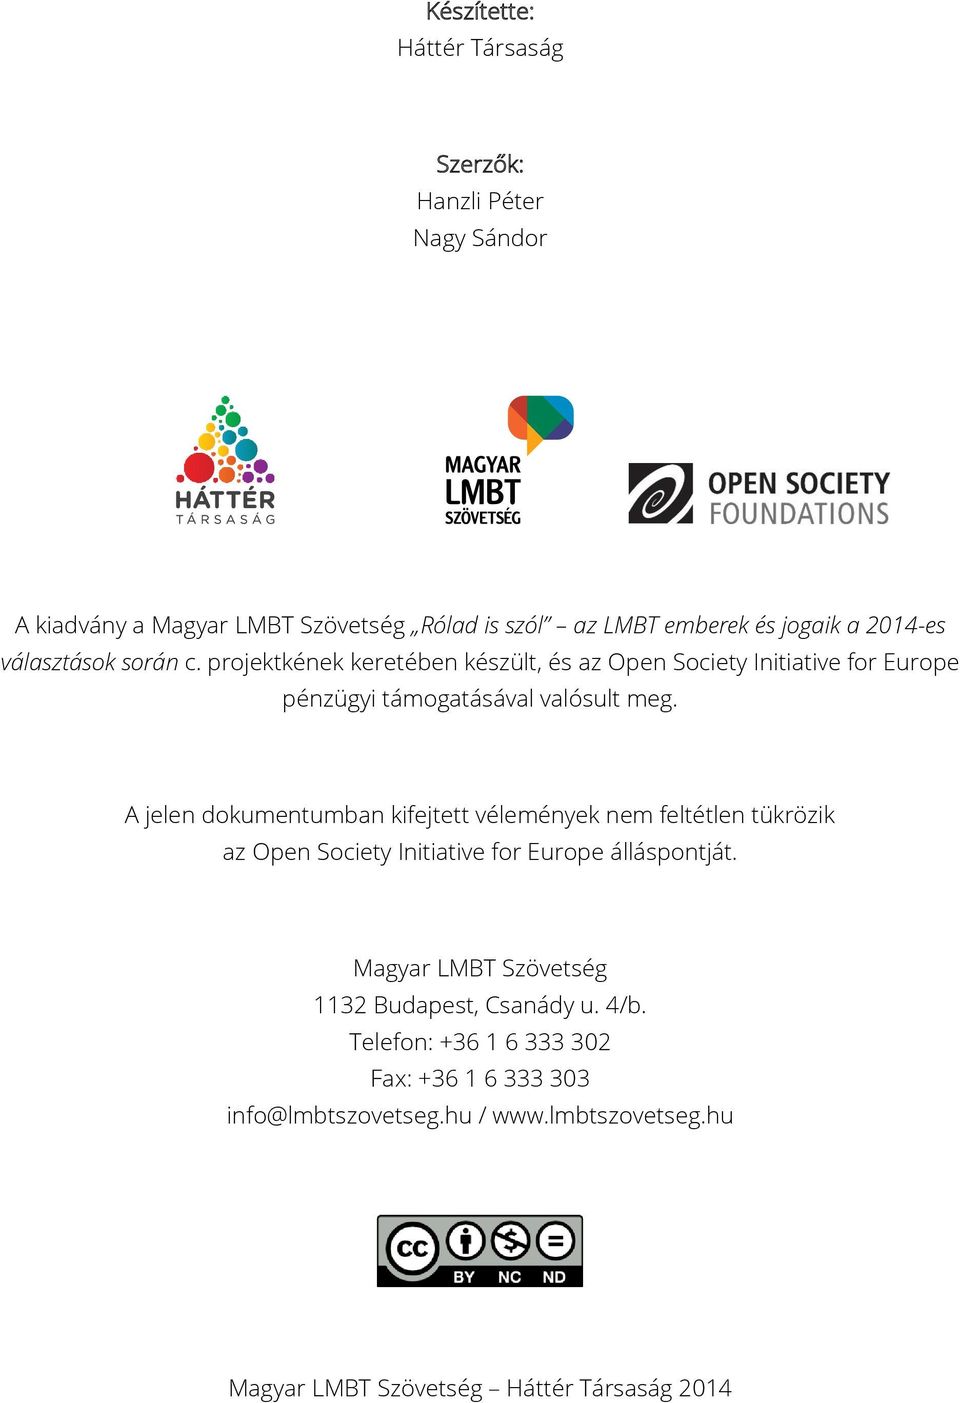 A jelen dokumentumban kifejtett vélemények nem feltétlen tükrözik az Open Society Initiative for Europe álláspontját.